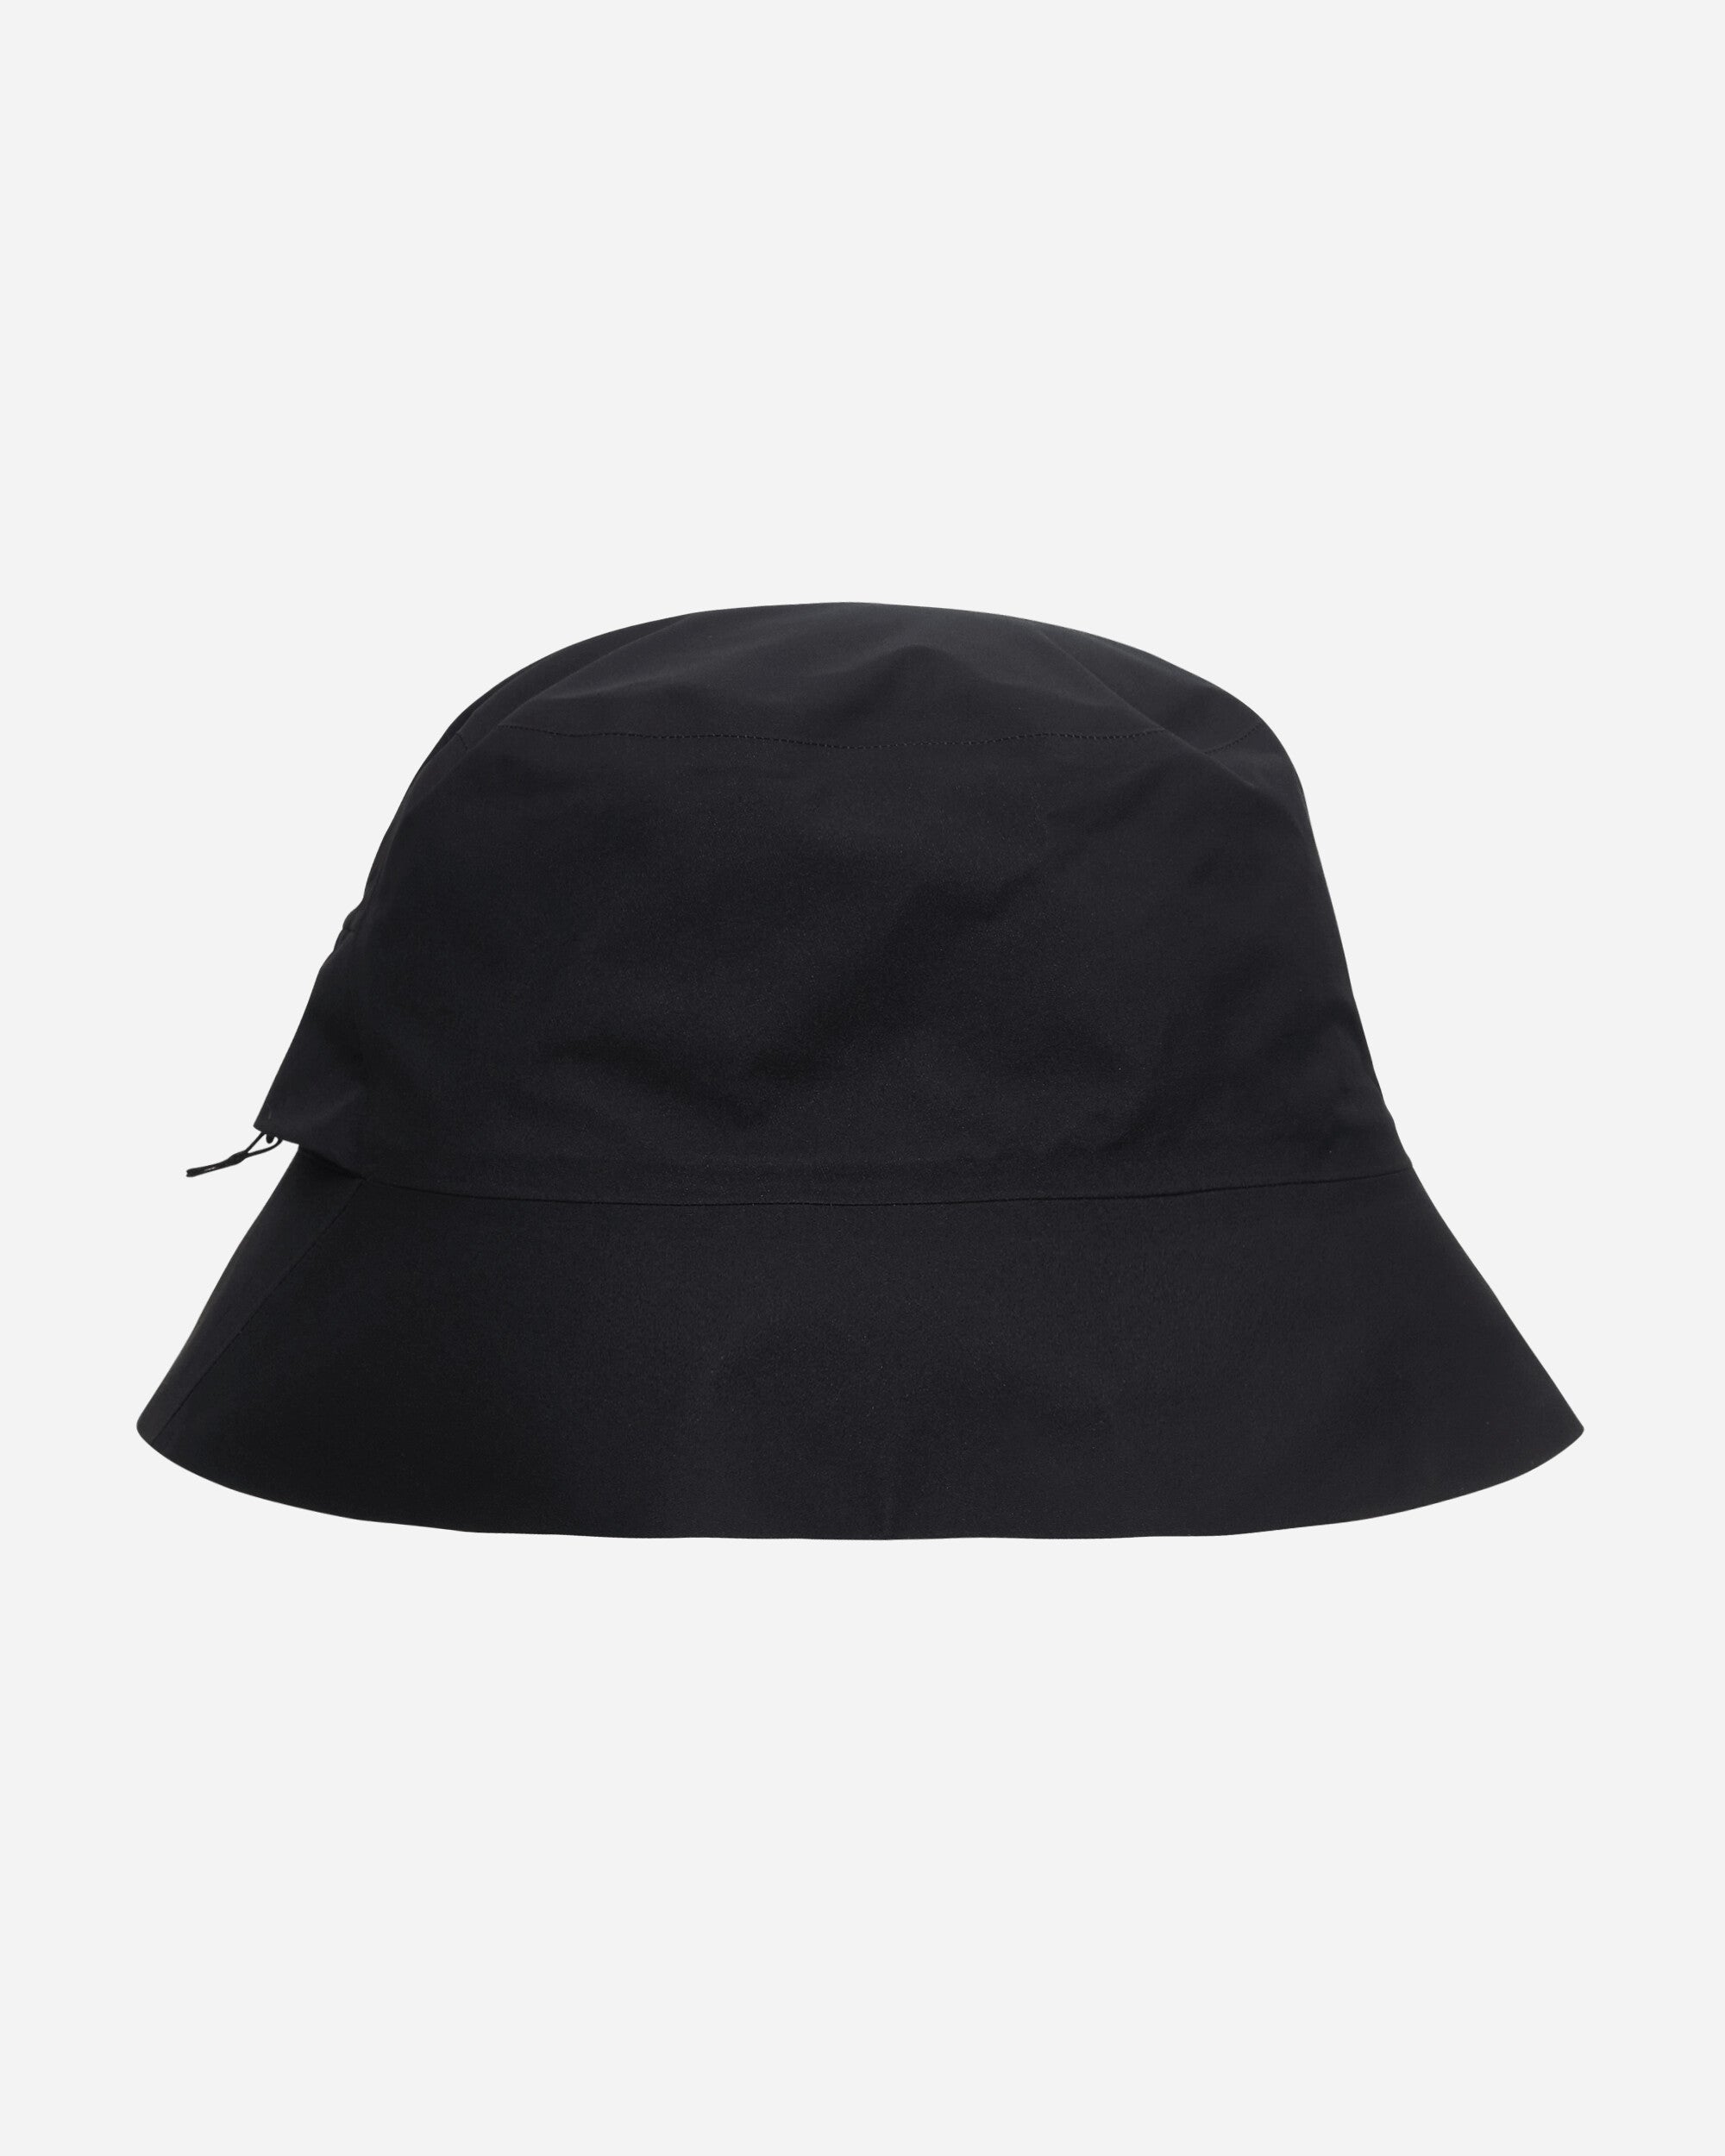 アークテリクス VEILANCE Bucet Hat サイズL/XL帽子